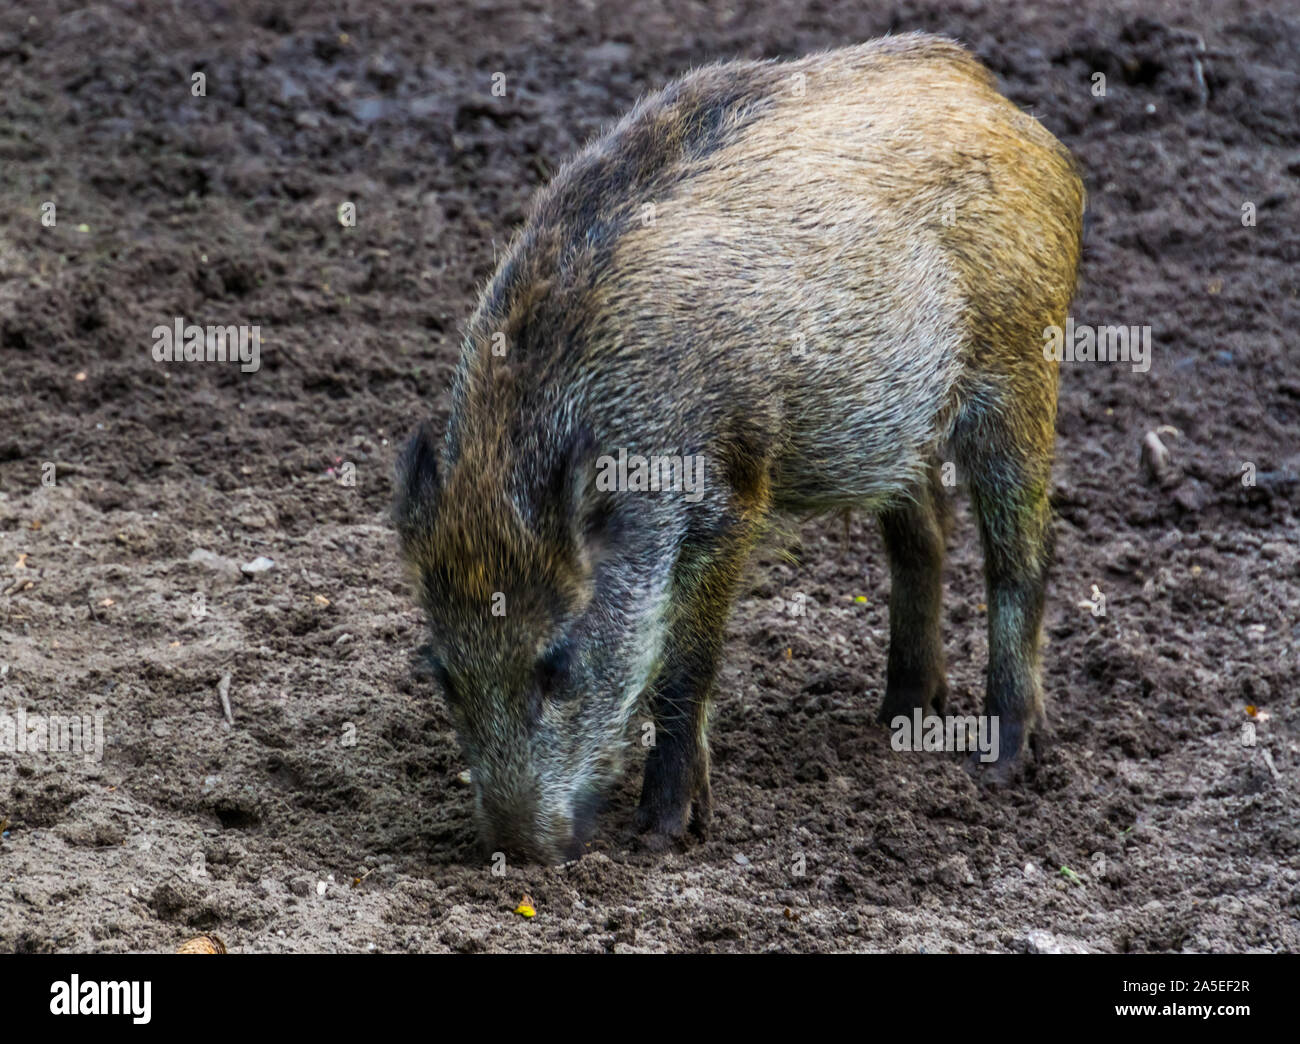 Ritratto di un cinghiale estirpazione di terra, istintuale del comportamento di maiale, comune specie animale da Eurasia Foto Stock